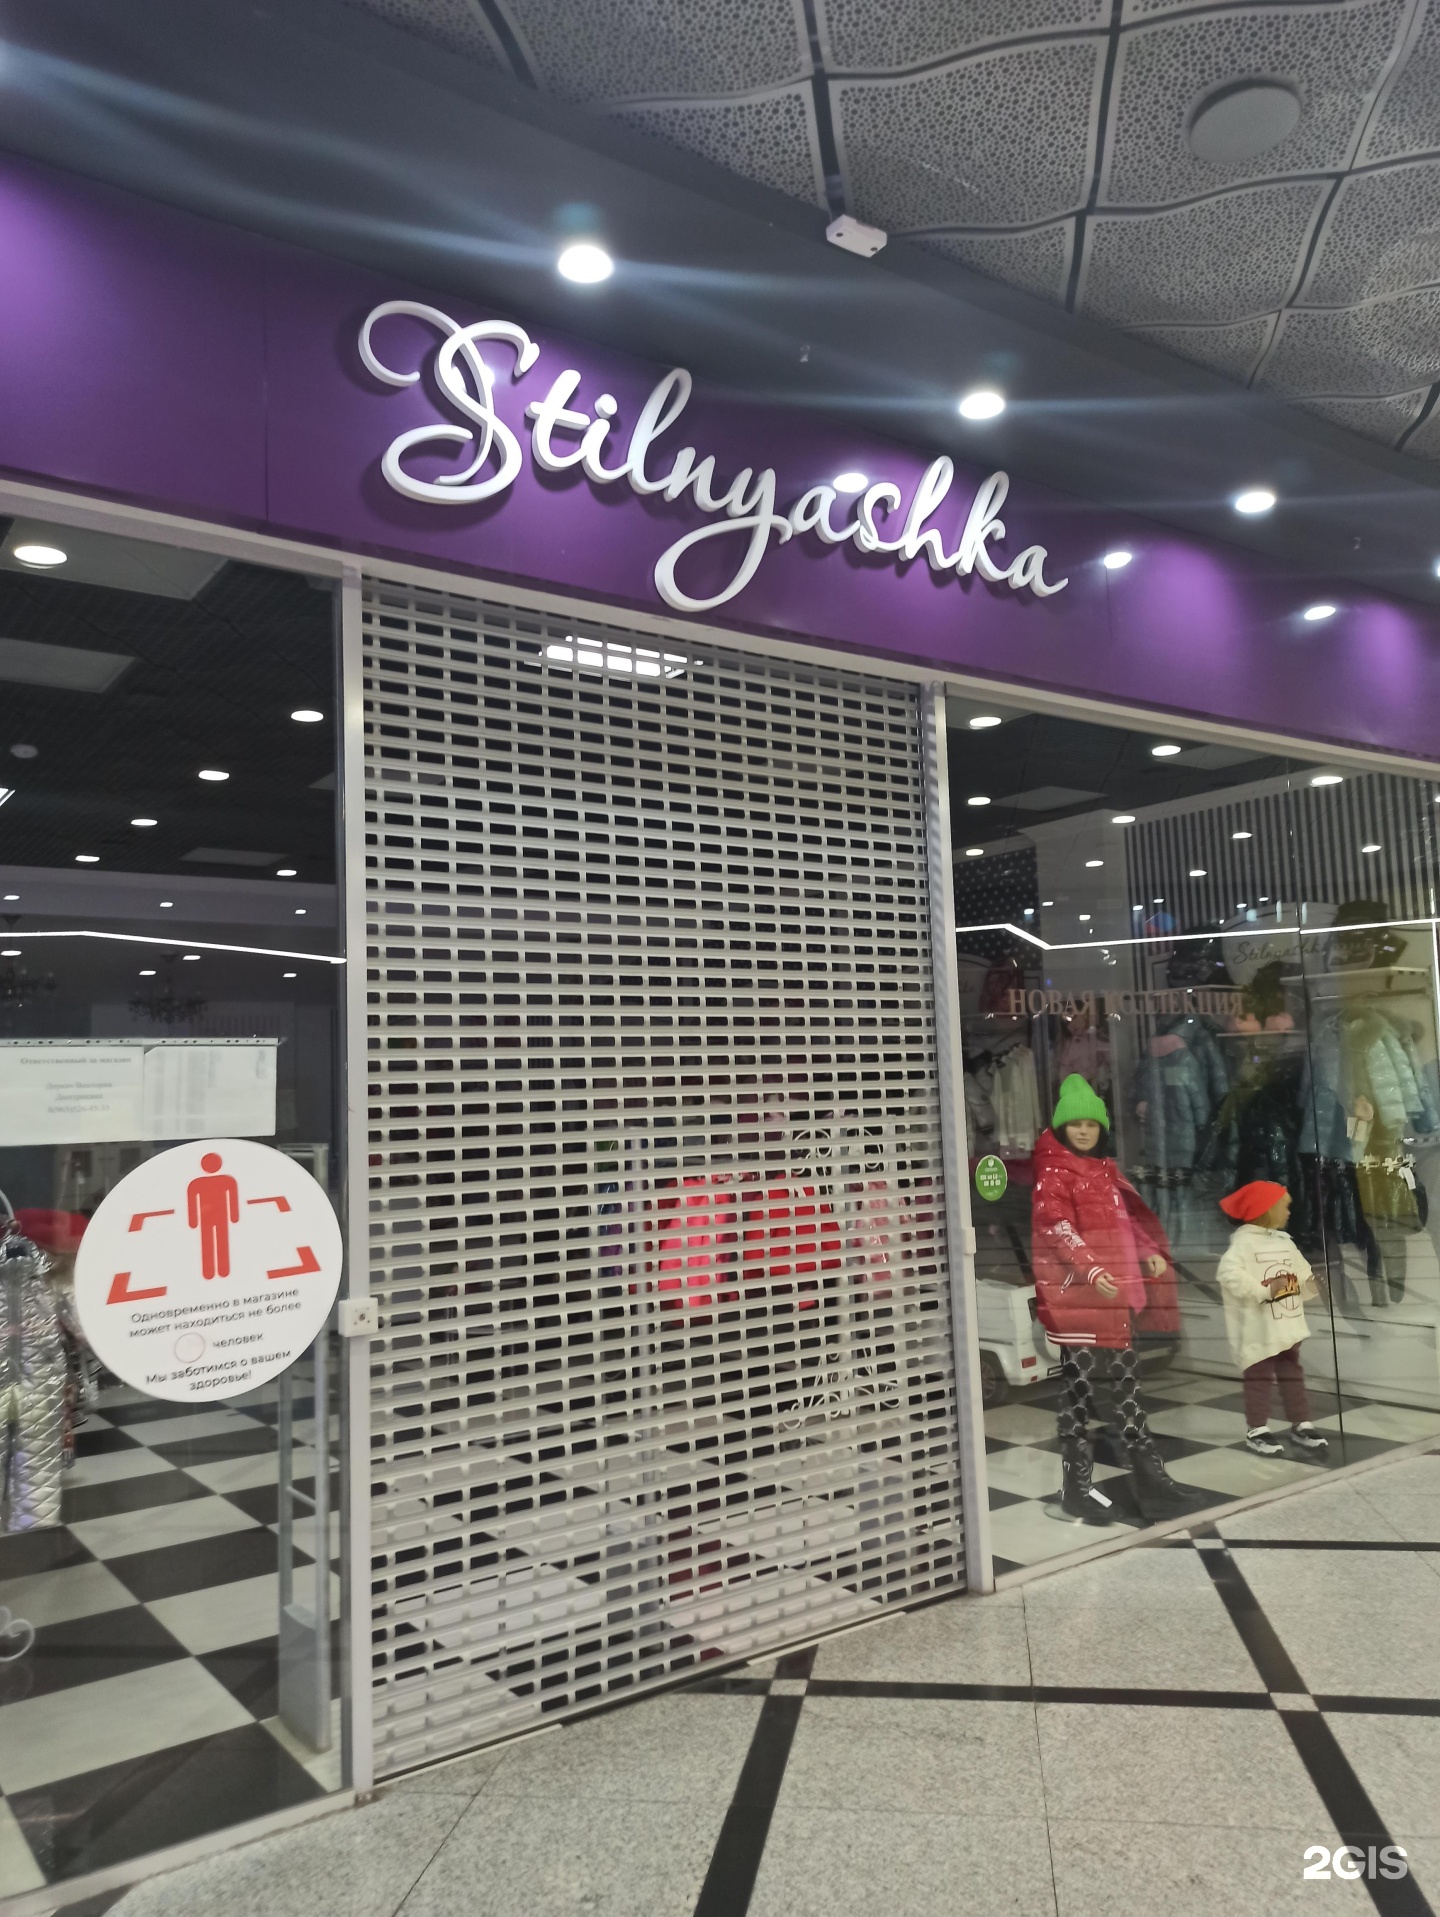 Stilnyashka Детская Одежда Интернет Магазин